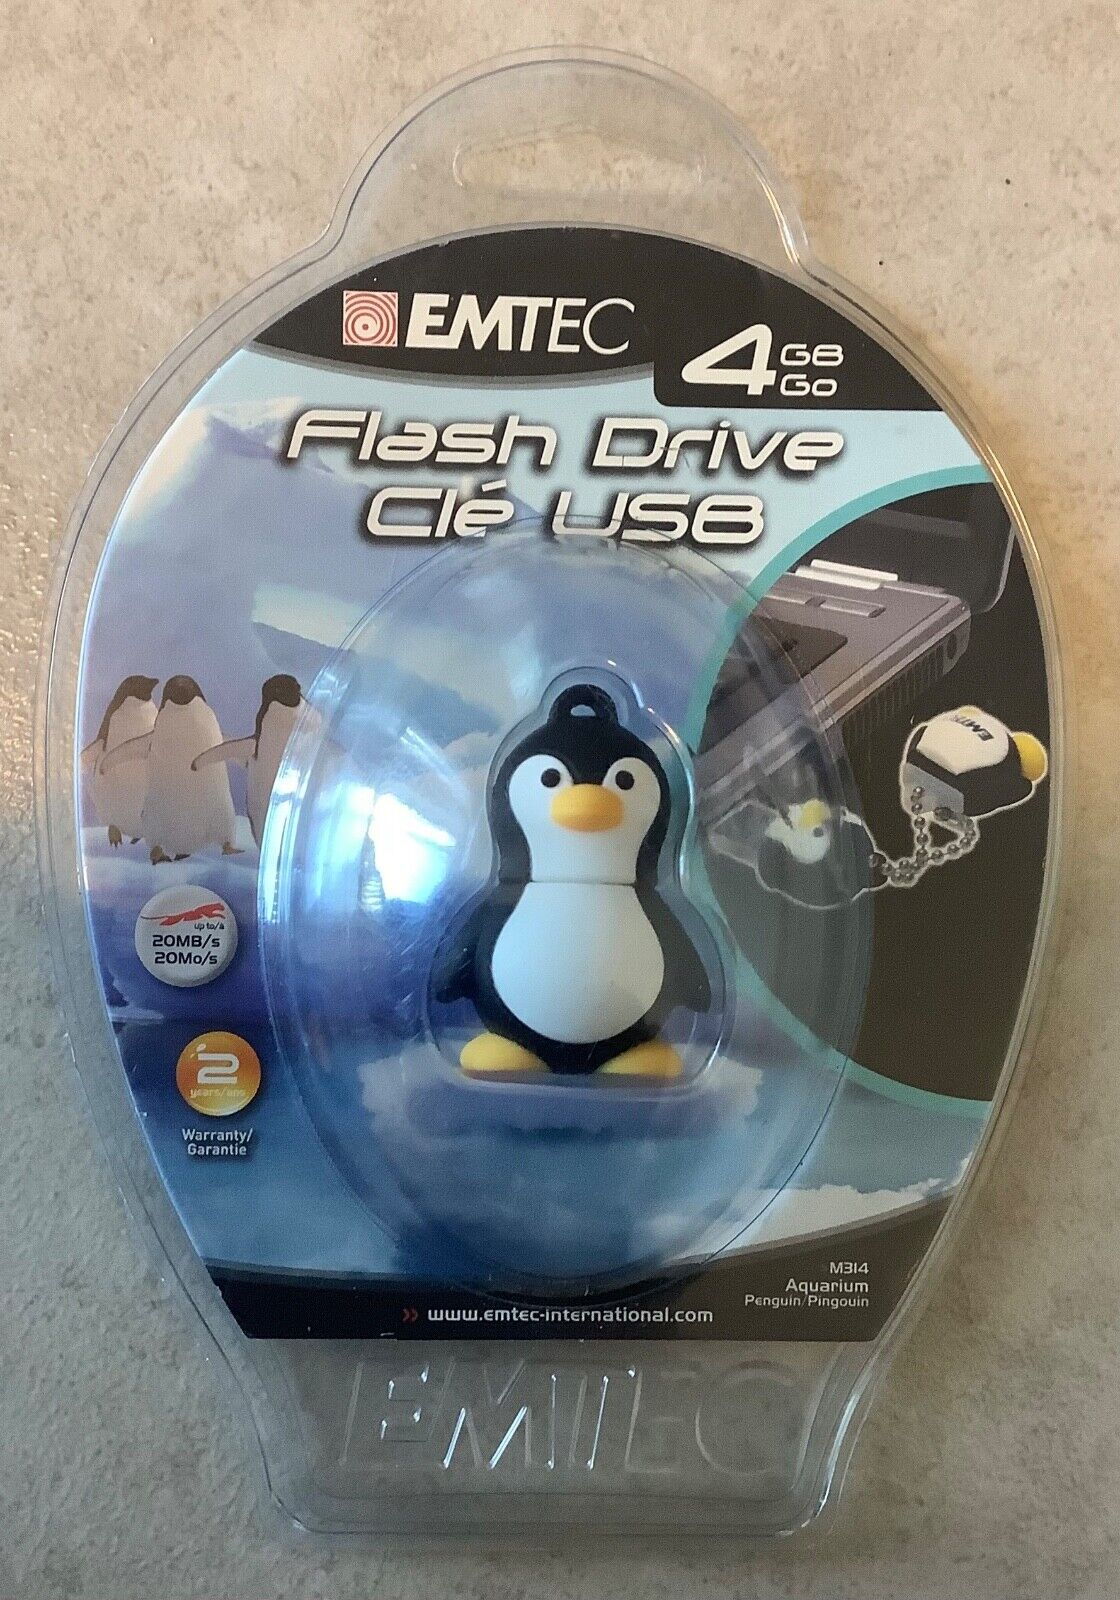 EMTEC Aquarium Penguin 4 GB USB Flash Drive-New In Package- .